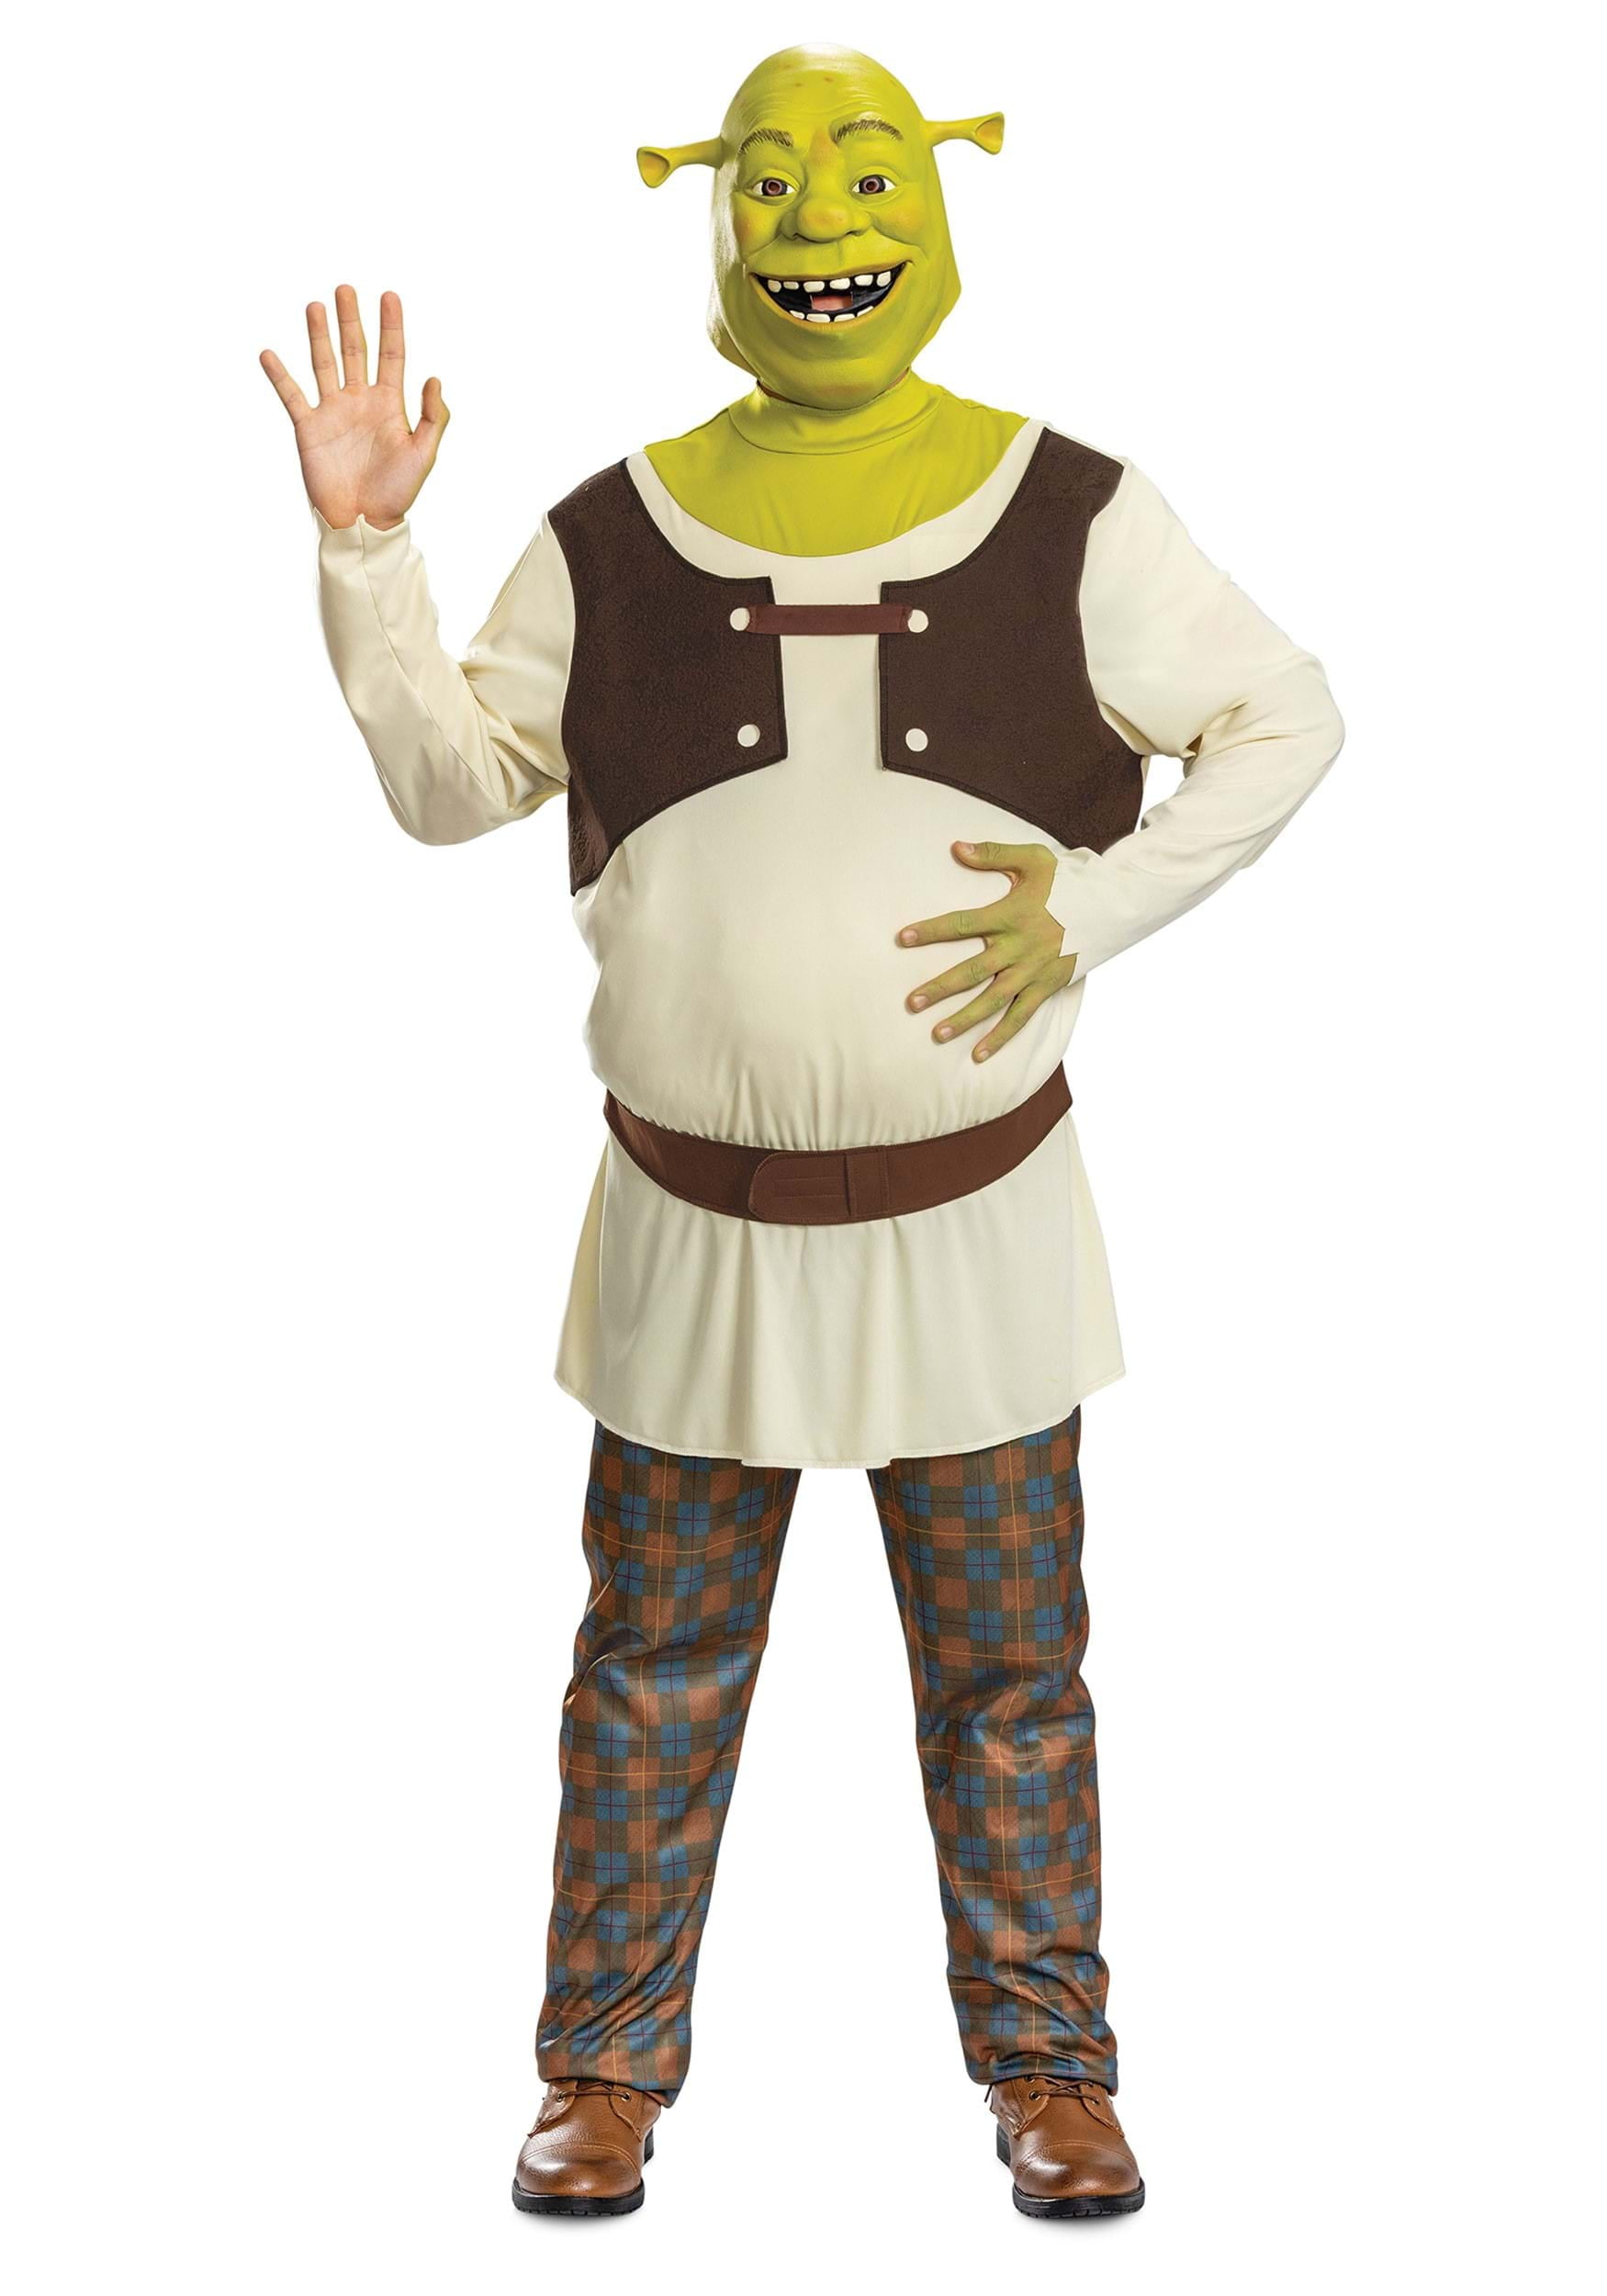 Shrek Costume Ideas